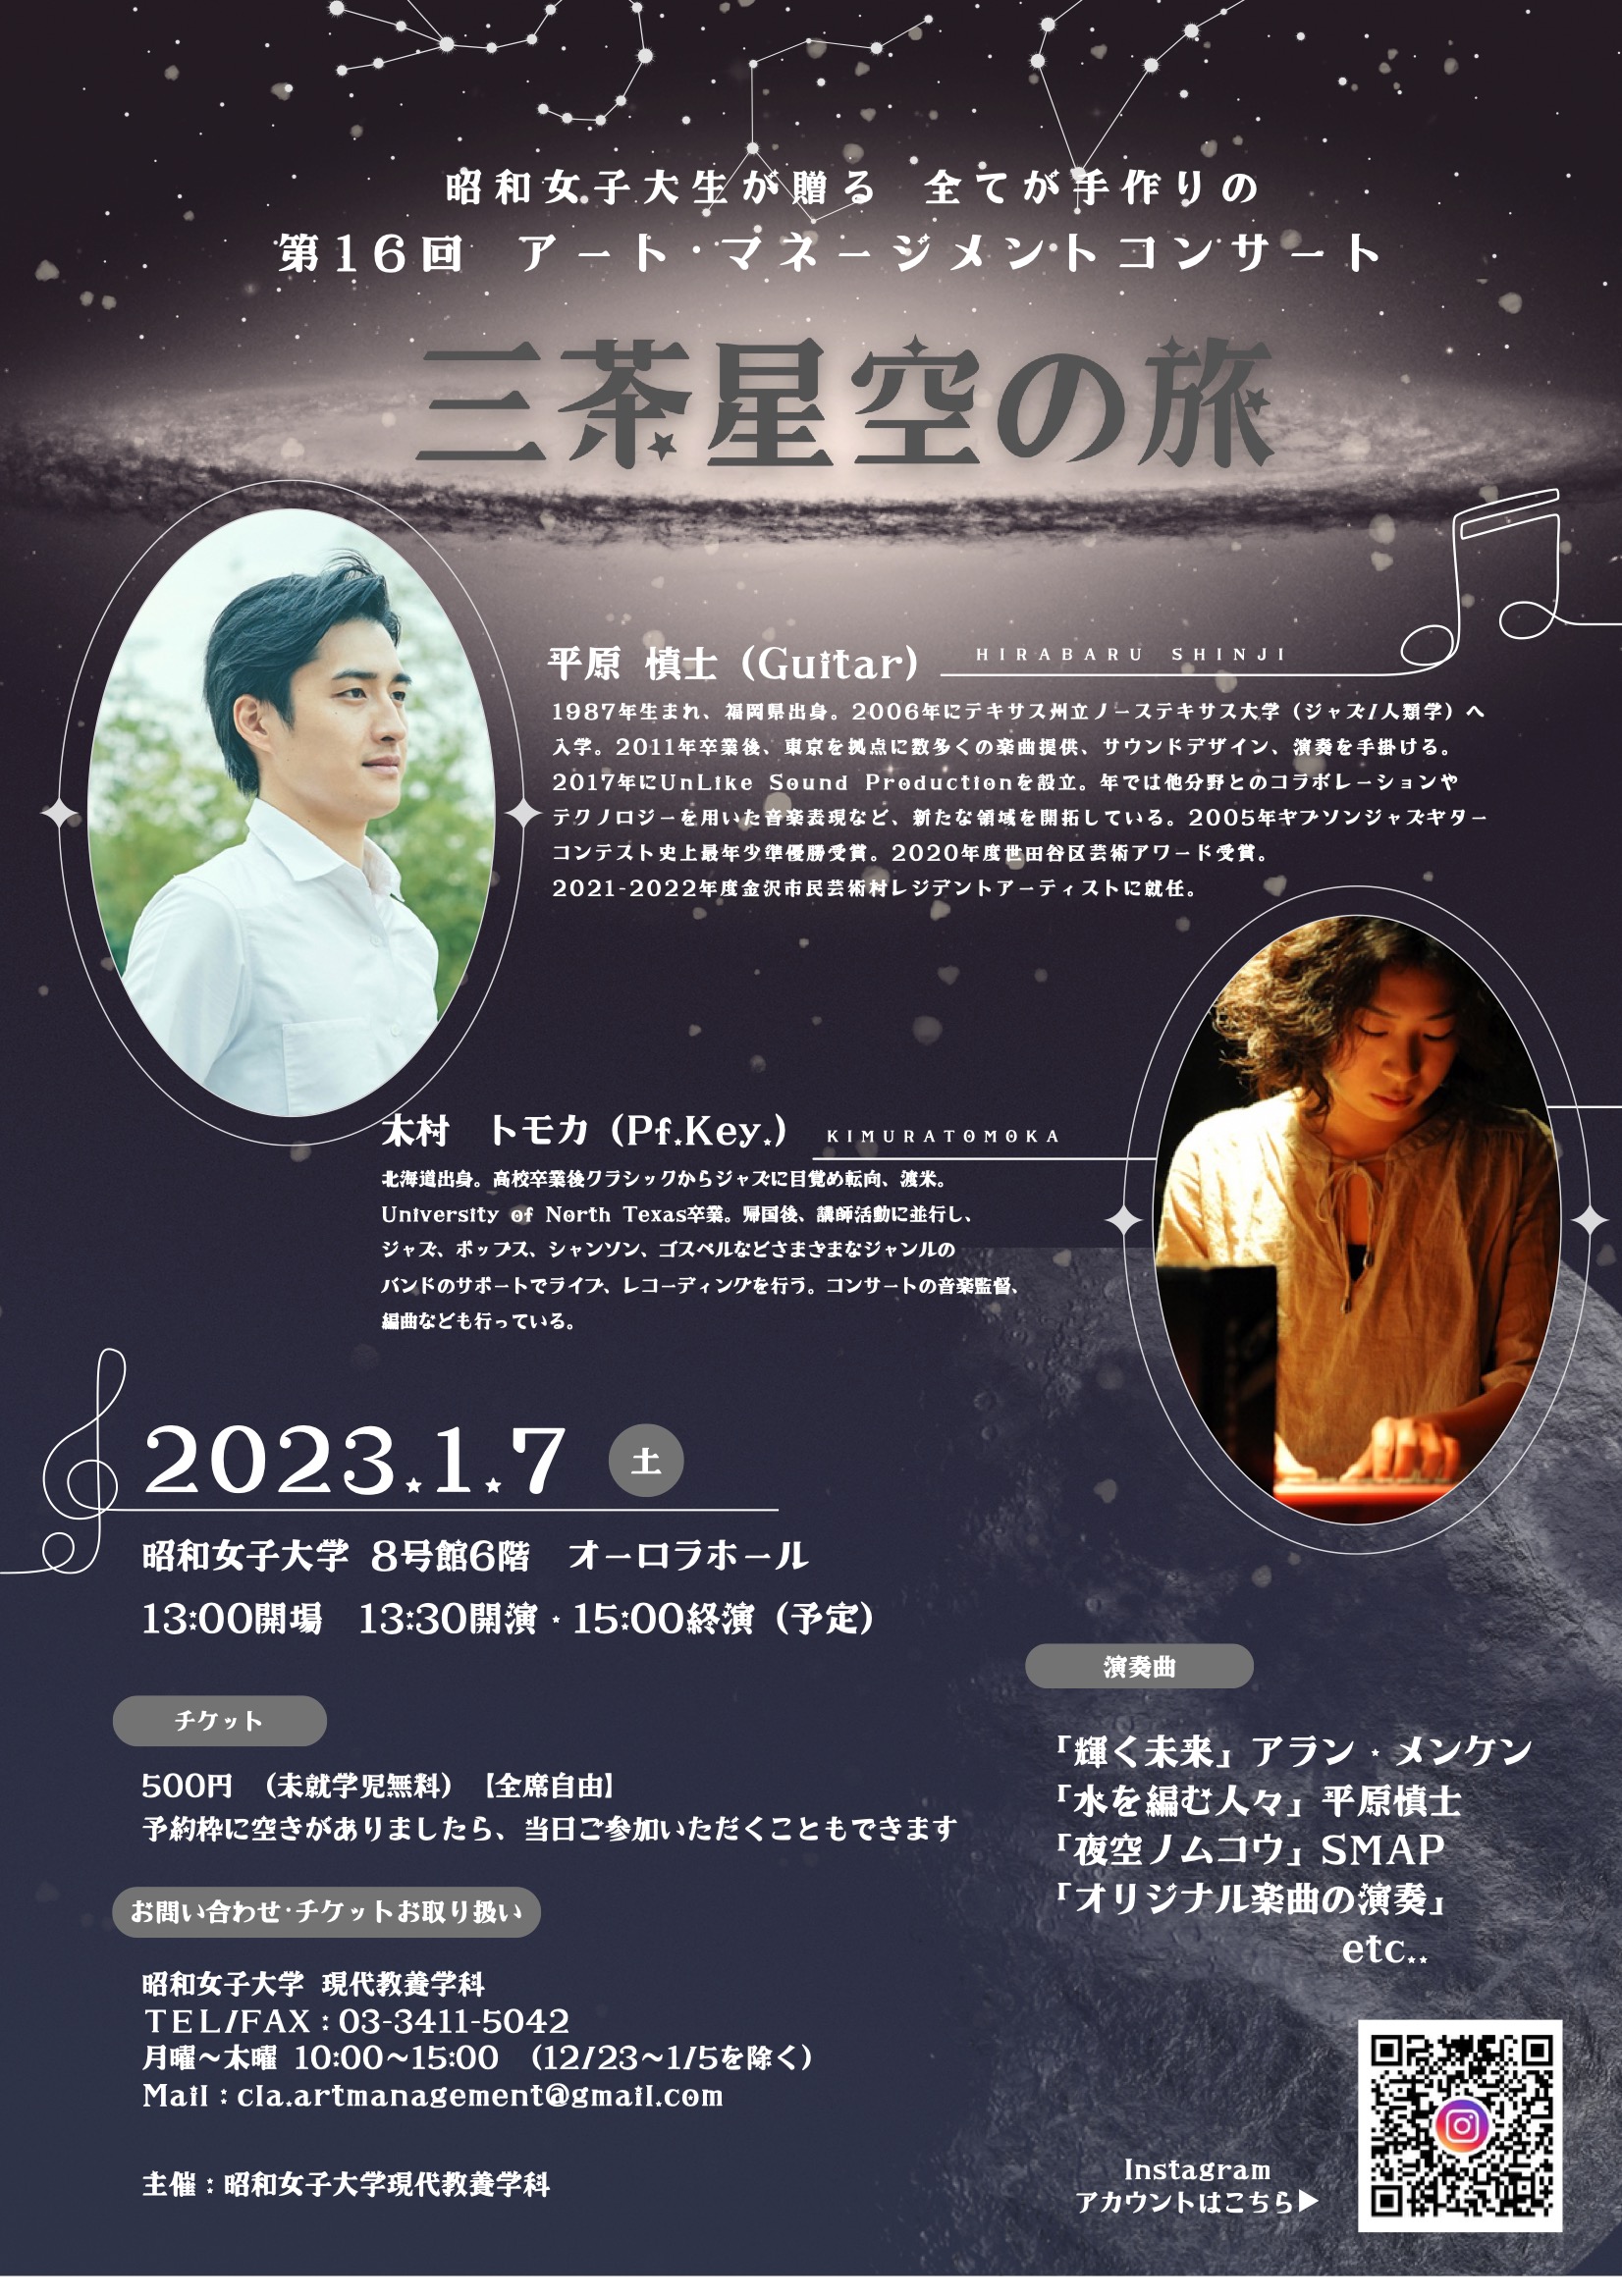 昭和女子大学にて開催されるイベント「三茶星空の旅」に出演いたします